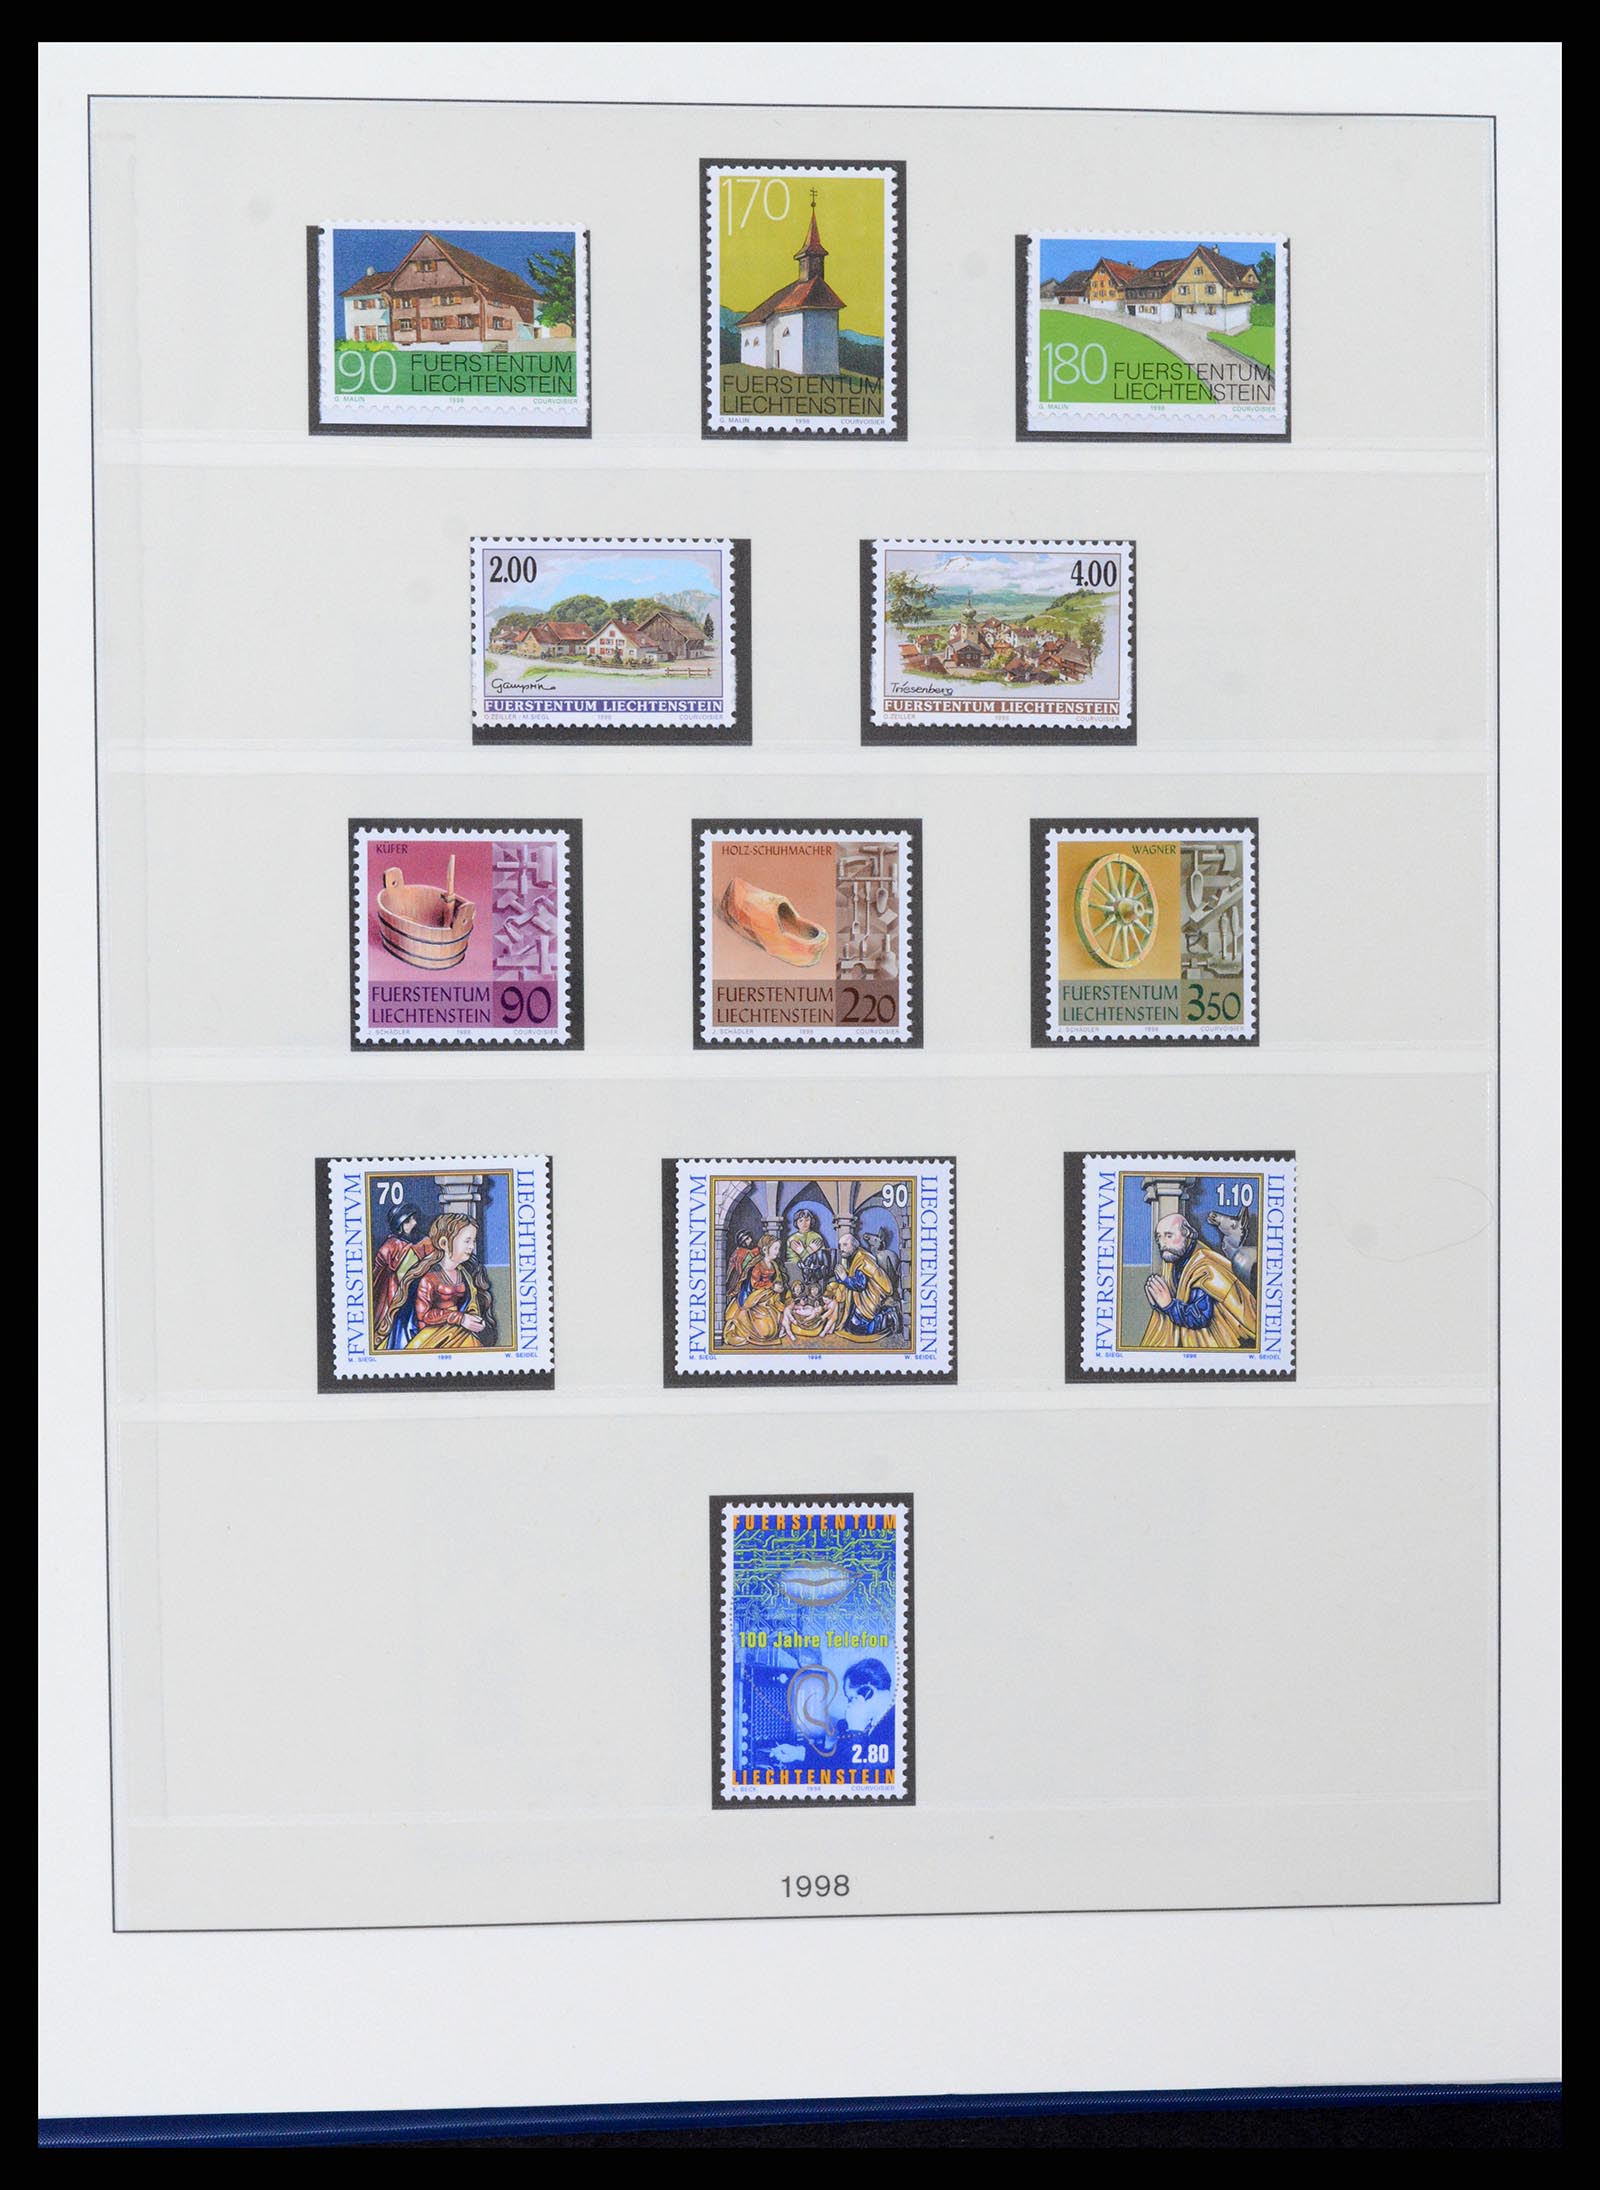 37295 120 - Stamp collection 37295 Liechtenstein 1912-2009.